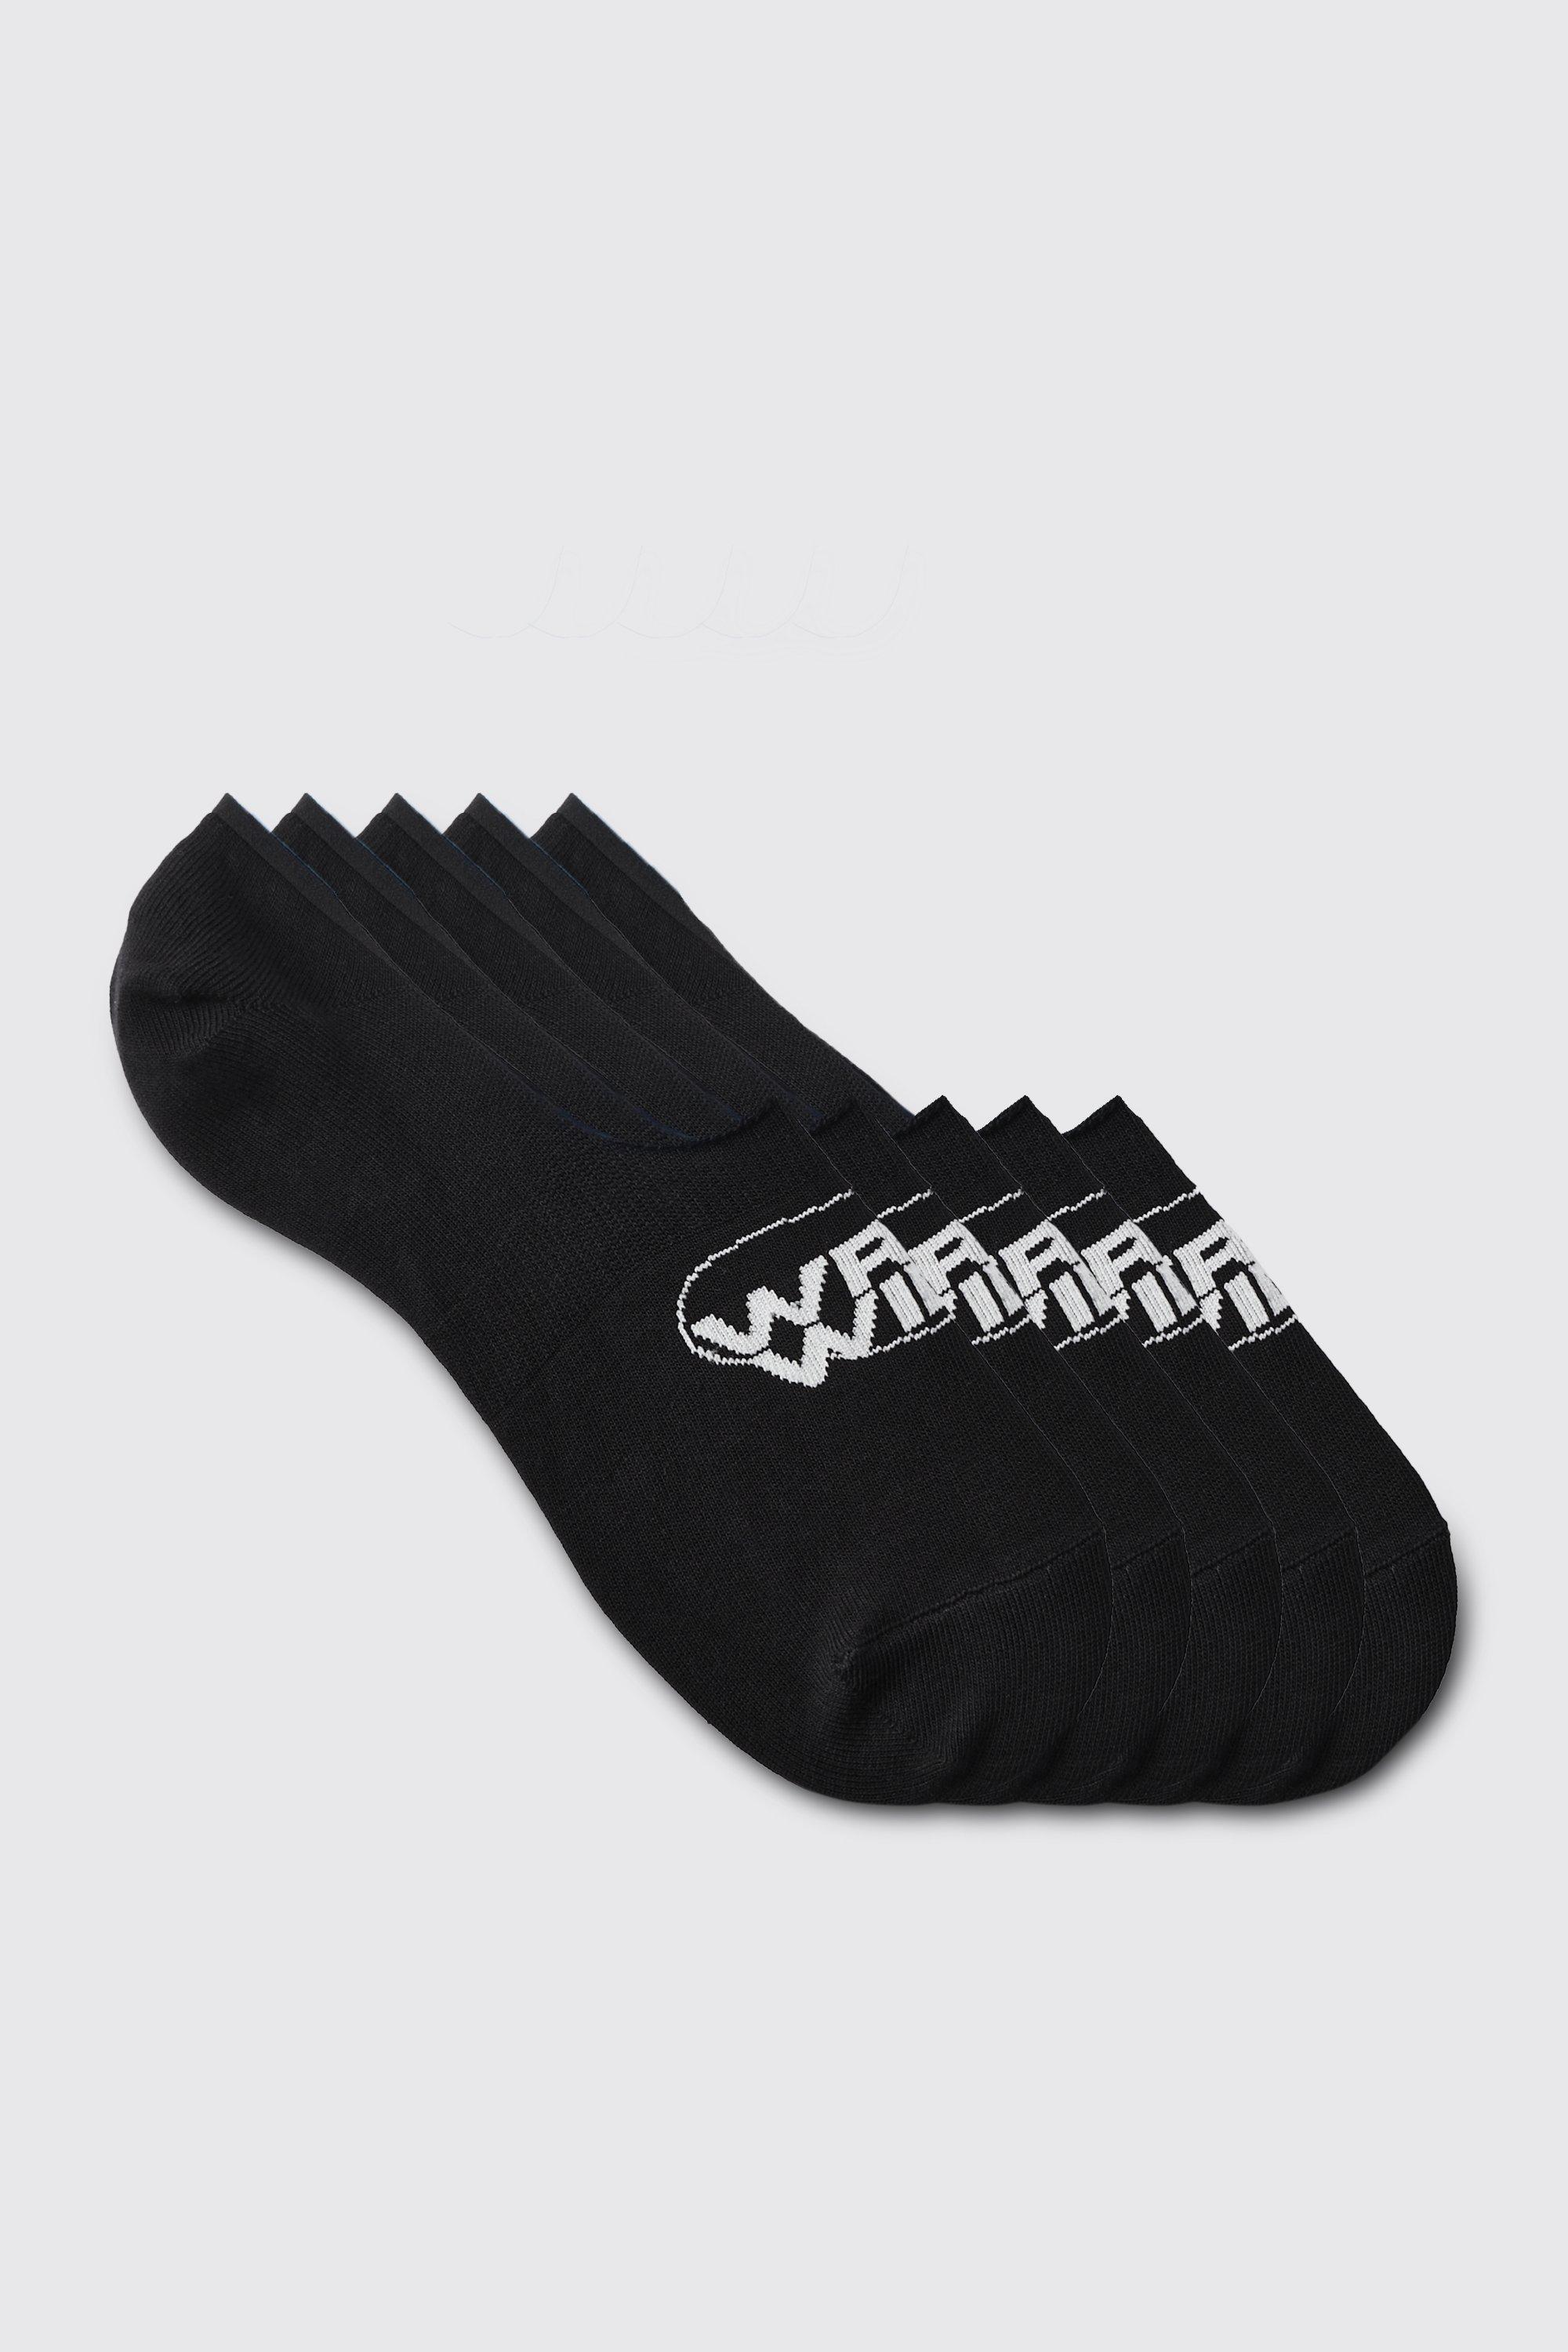 Mens Black 5 Pack Worldwide Logo Invisible Socks, Black